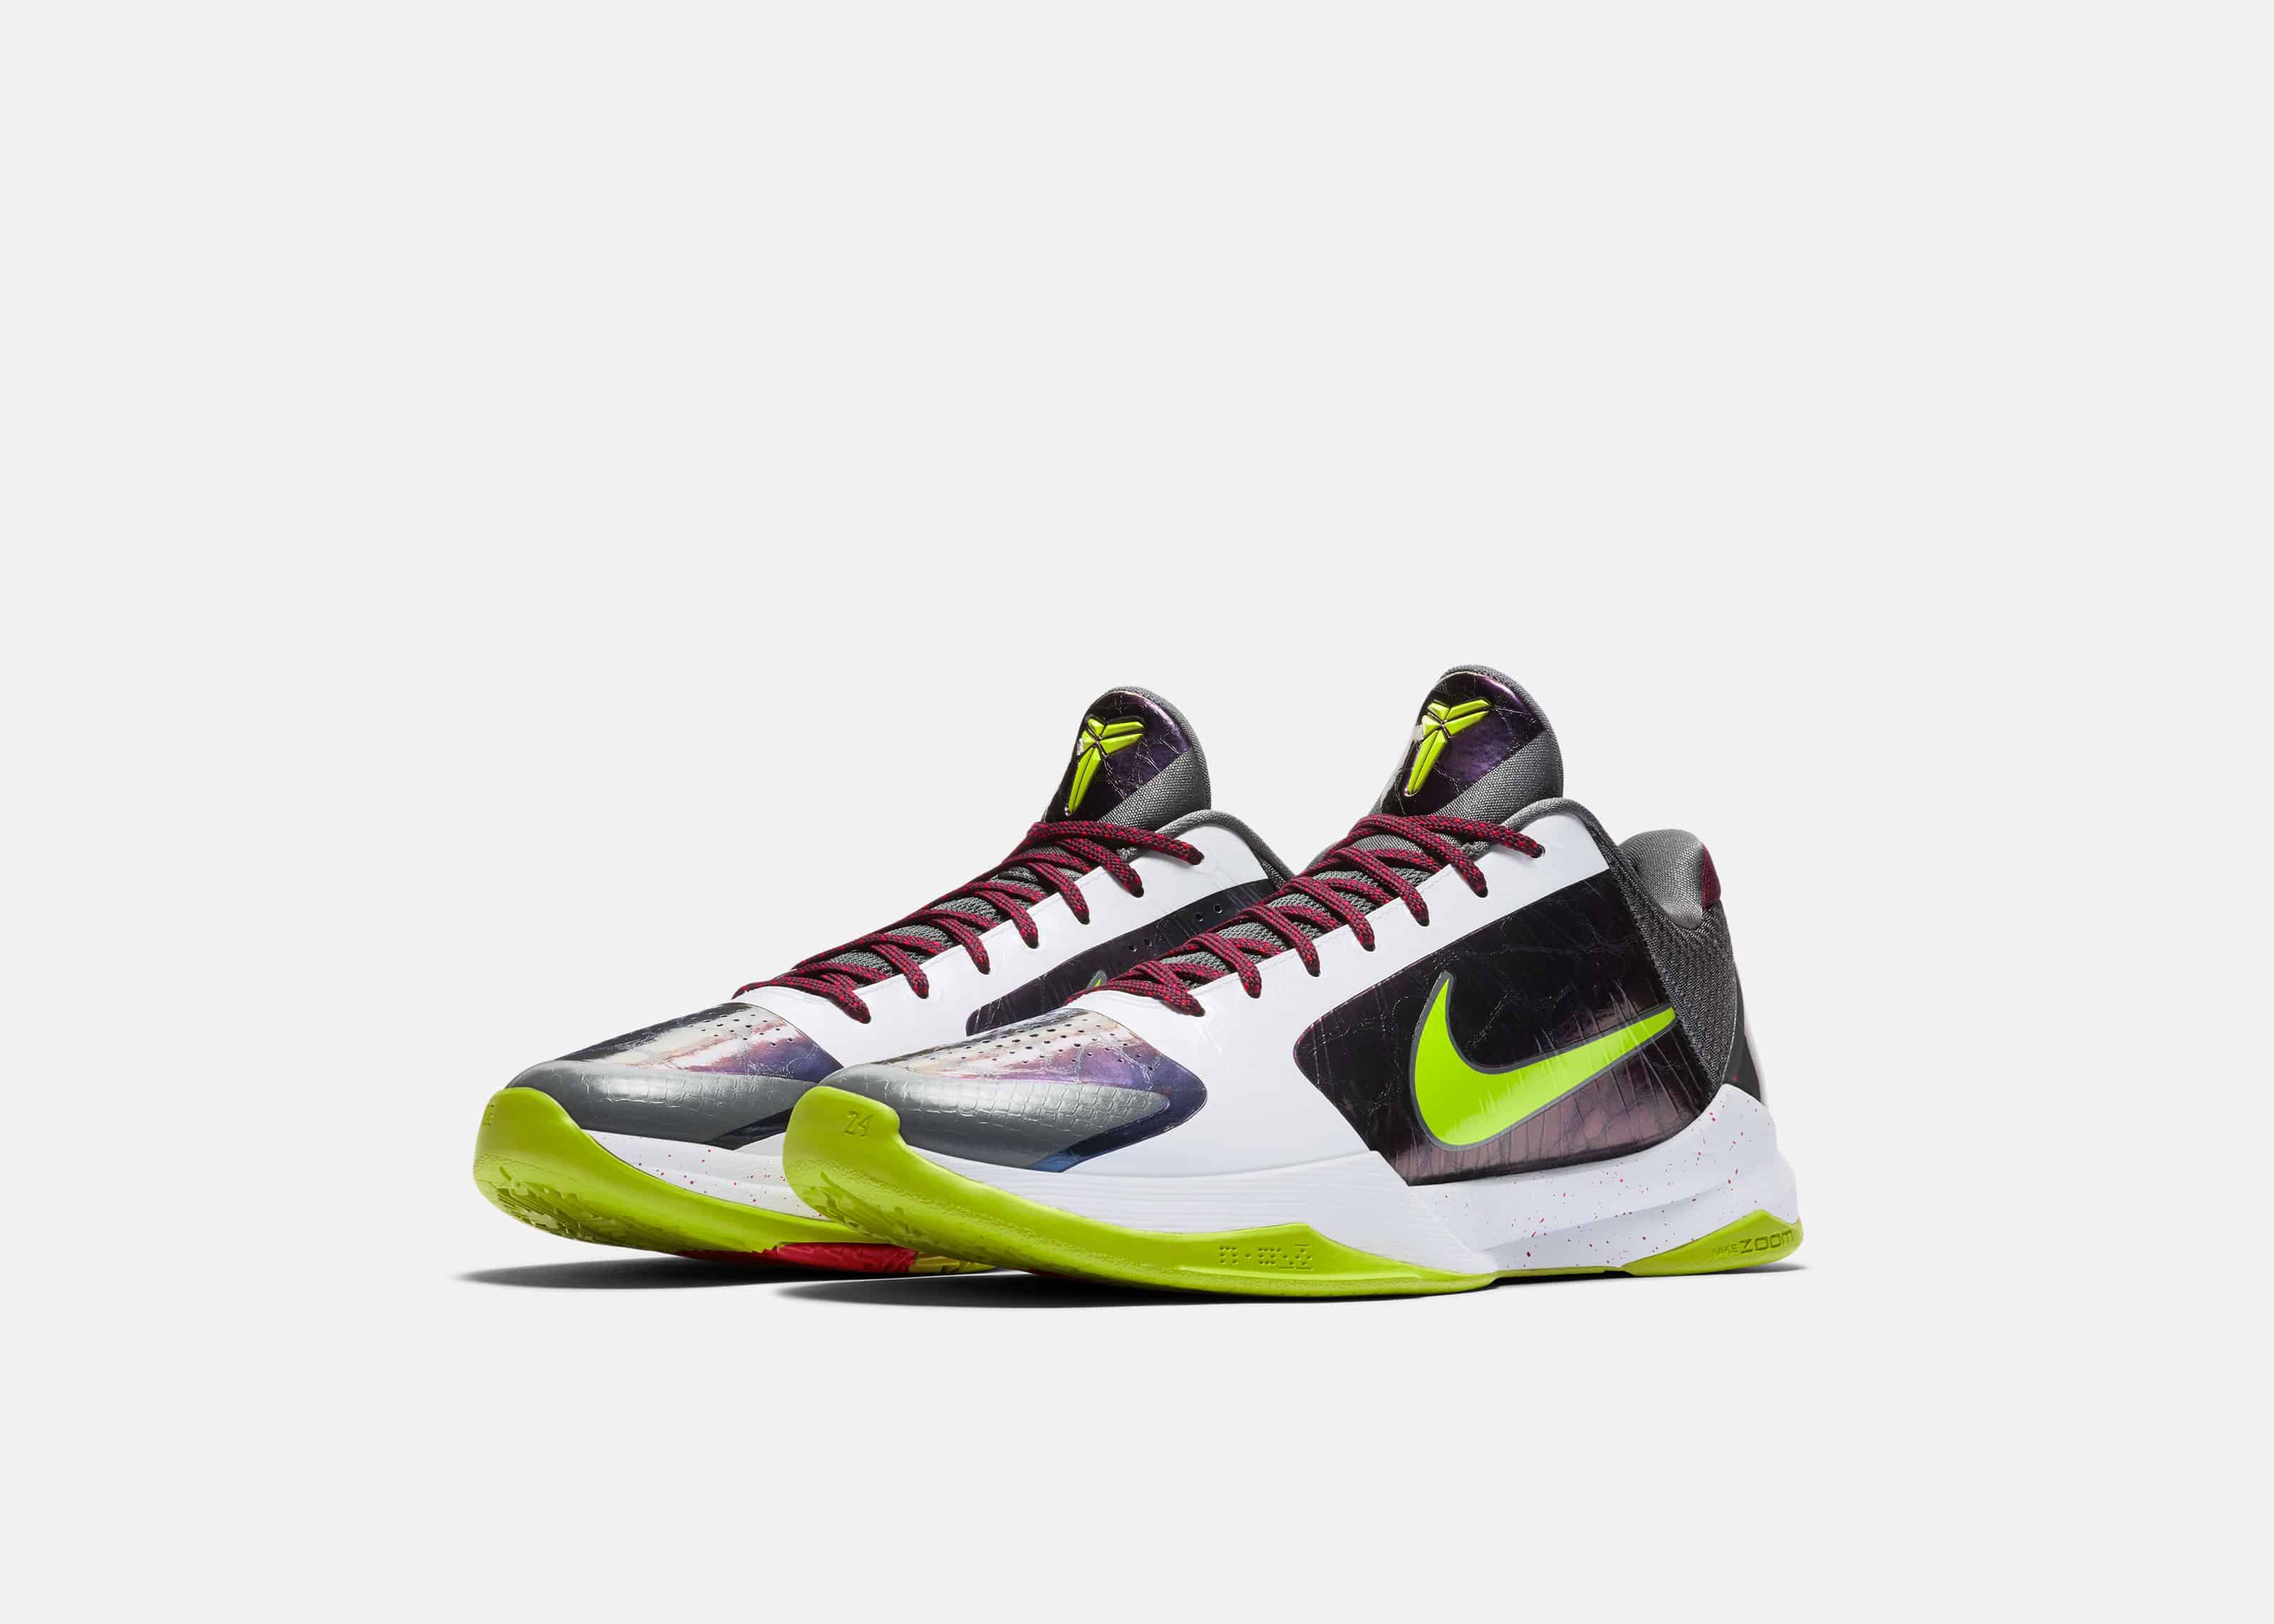 KOBE V Protro Basketball Shoe from Nike Releases Jan 3rd - Cross Train